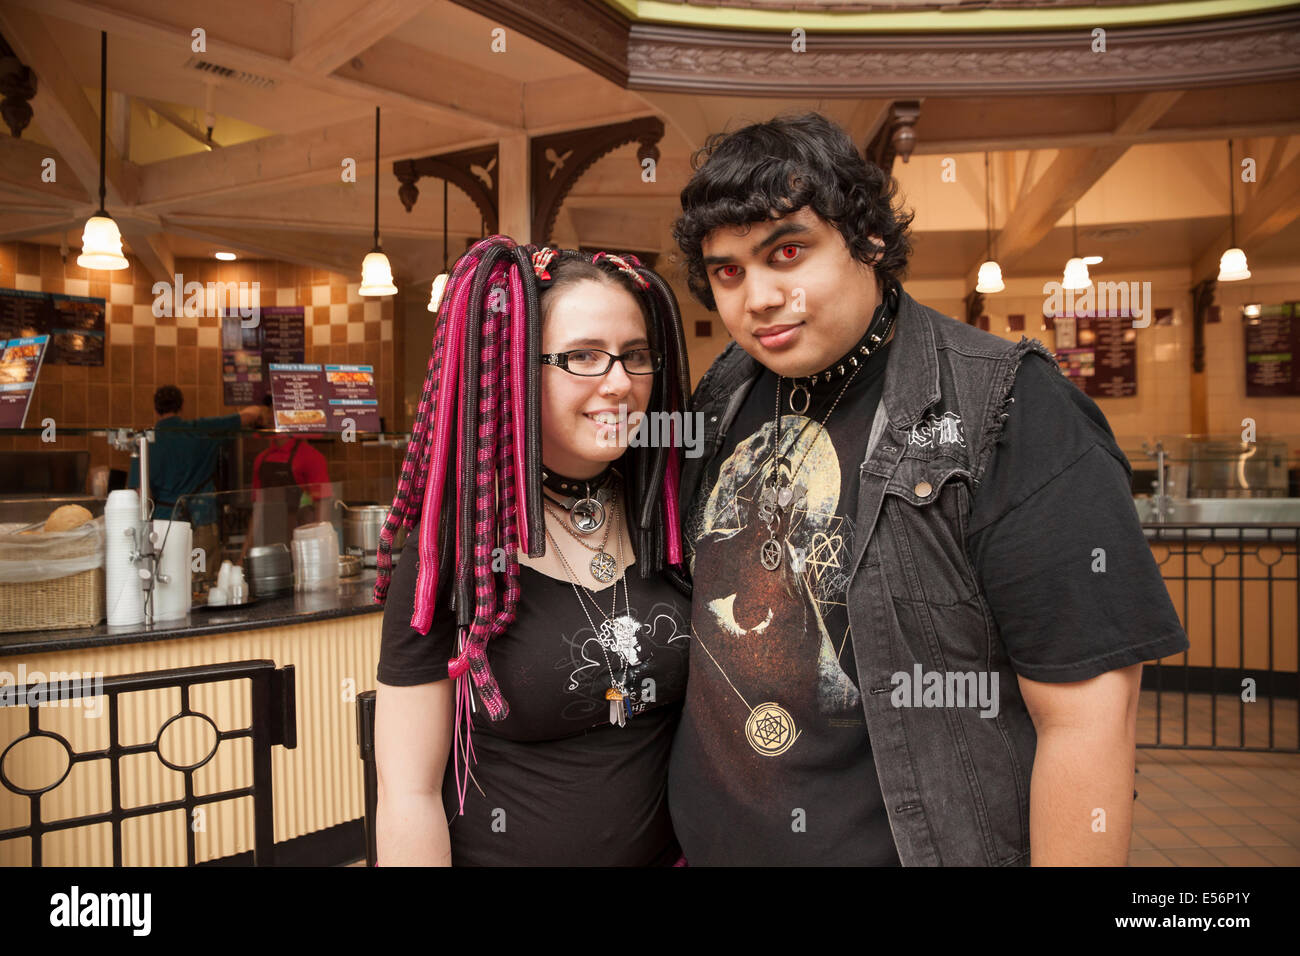 Goth couple portant des vêtements noirs, des bijoux cloutés, et des piercings. Banque D'Images